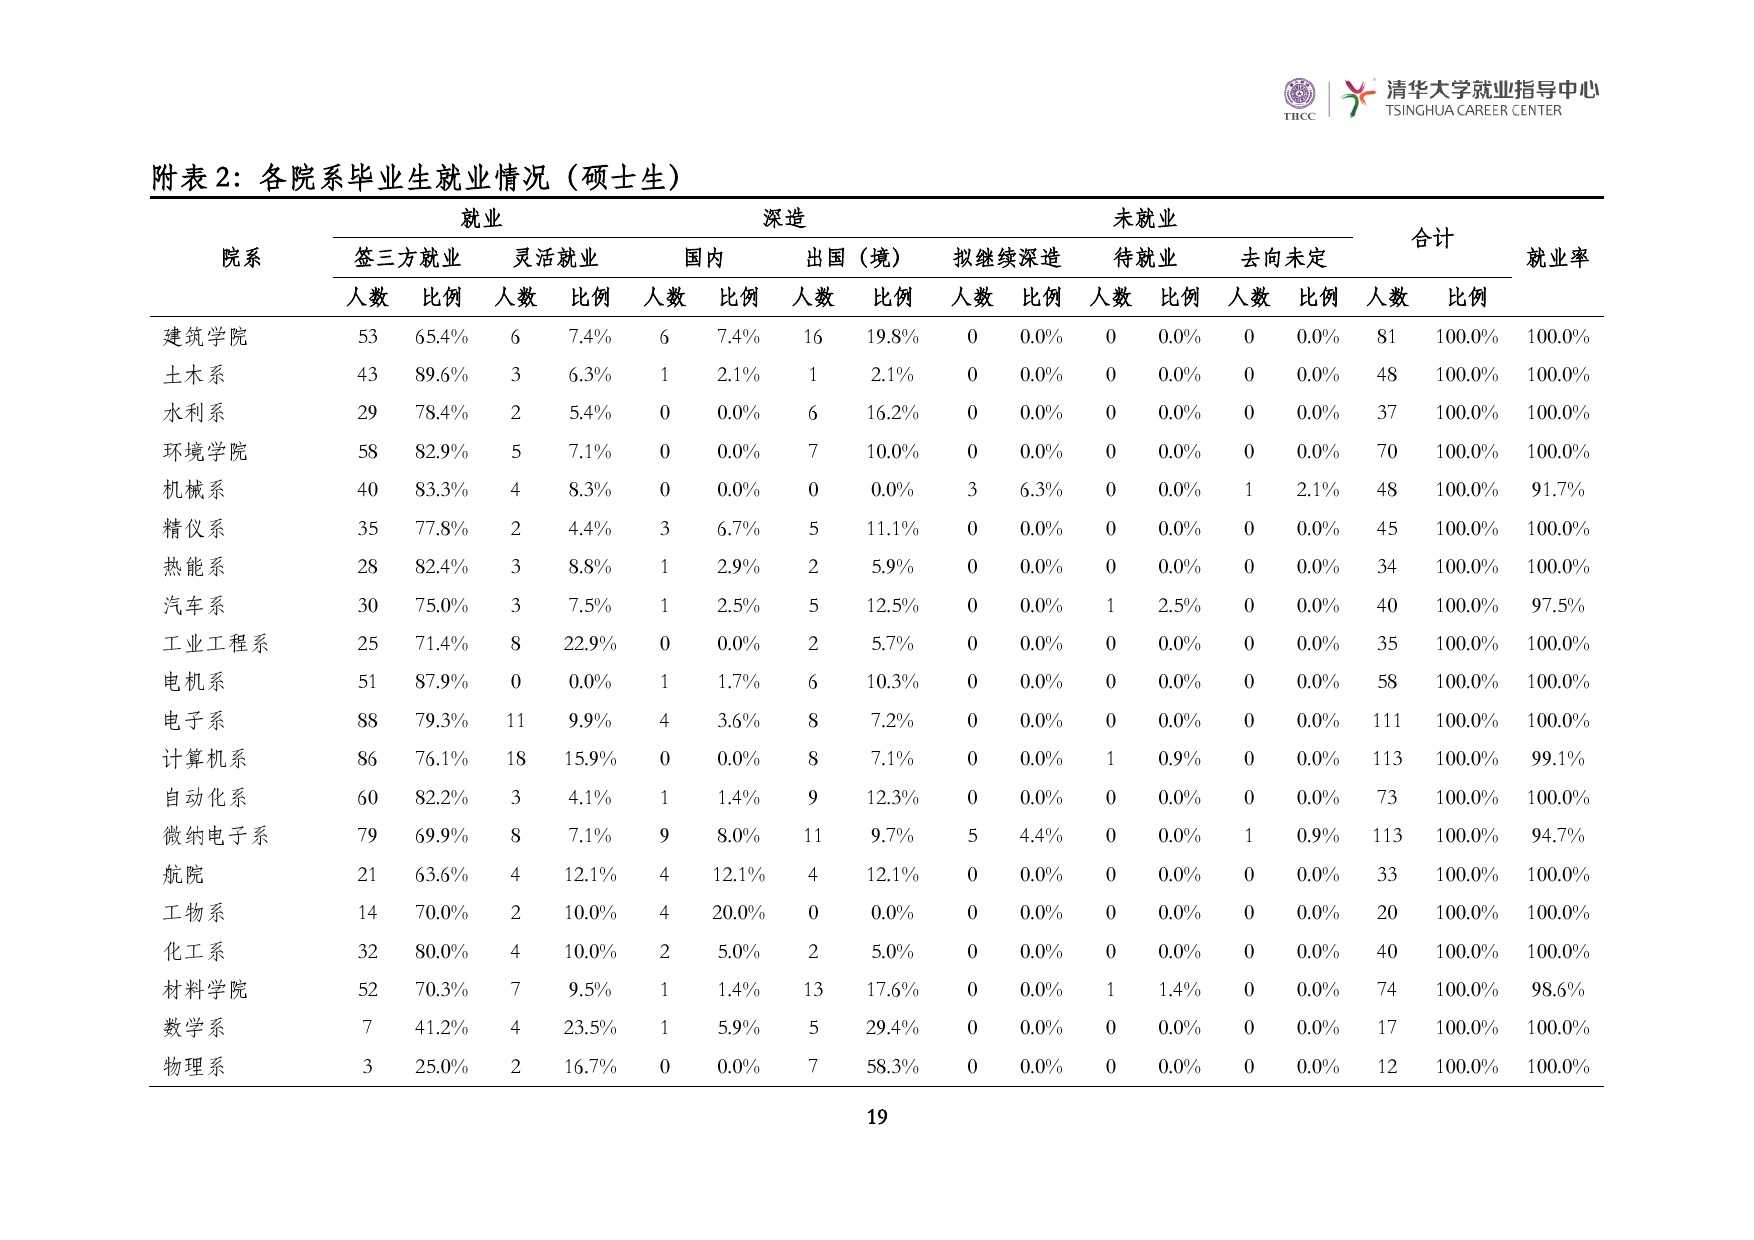 清華大學2014 年畢業生就業質量報告_000021